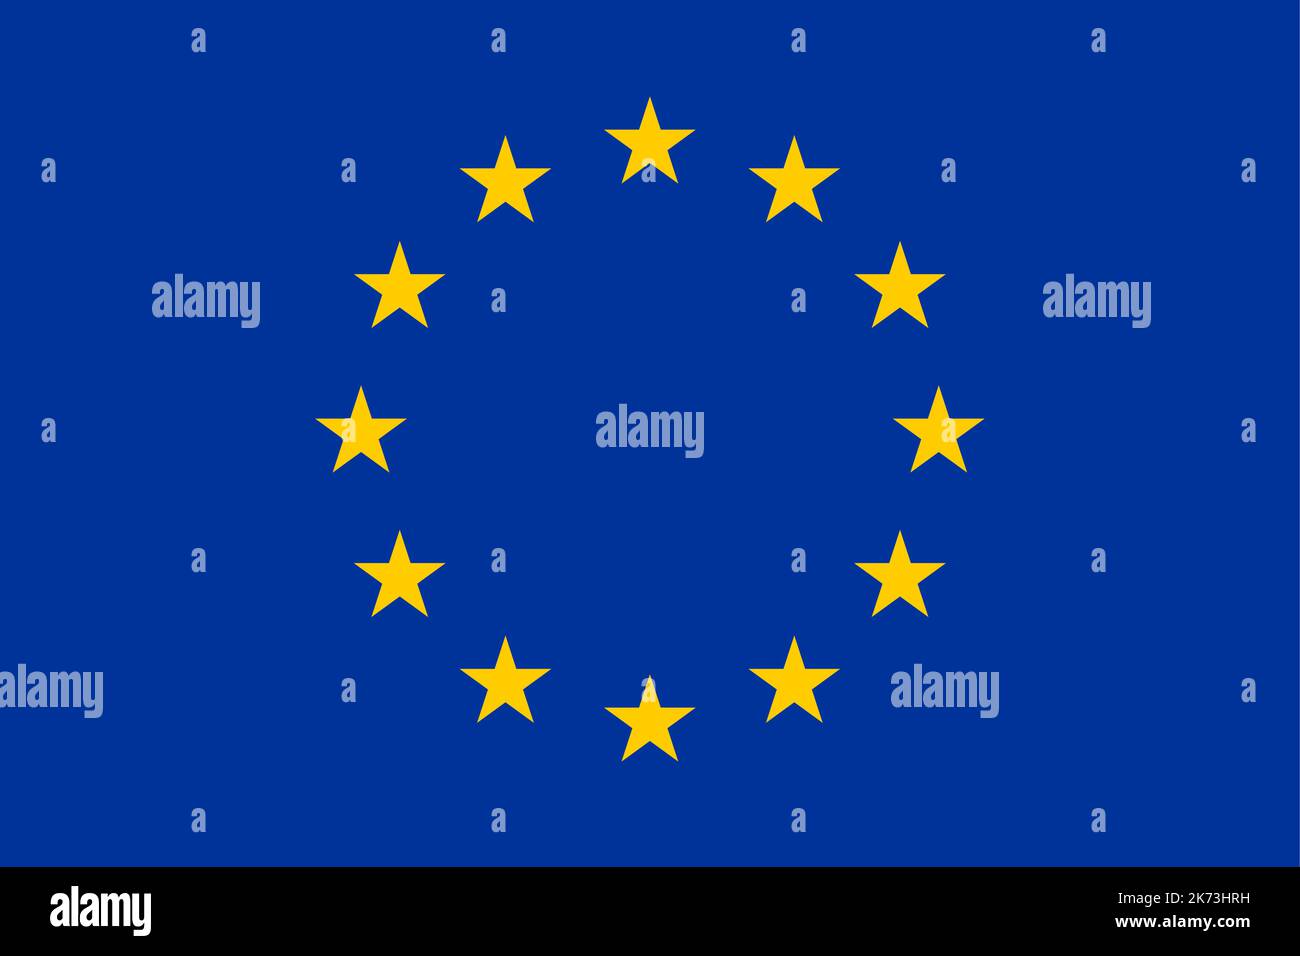 Bandera de Europa, Europea, Unión Europea, Consejo de Europa, círculo de doce estrellas amarillas de cinco puntas sobre un campo azul Ilustración del Vector